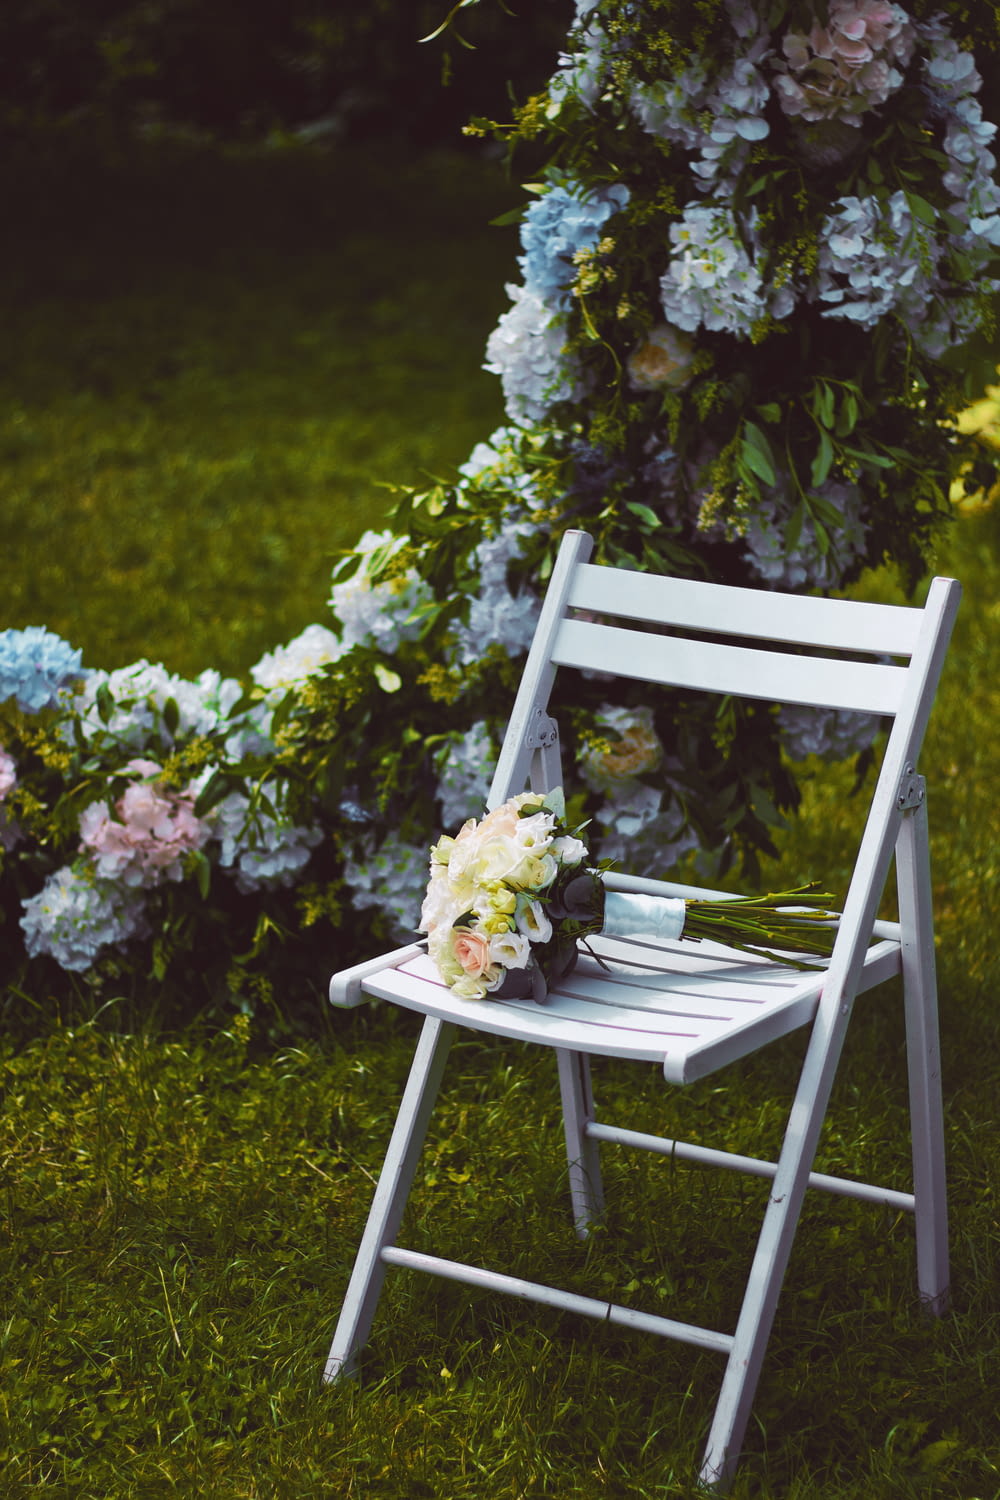 flores brancas e amarelas na cadeira de madeira branca